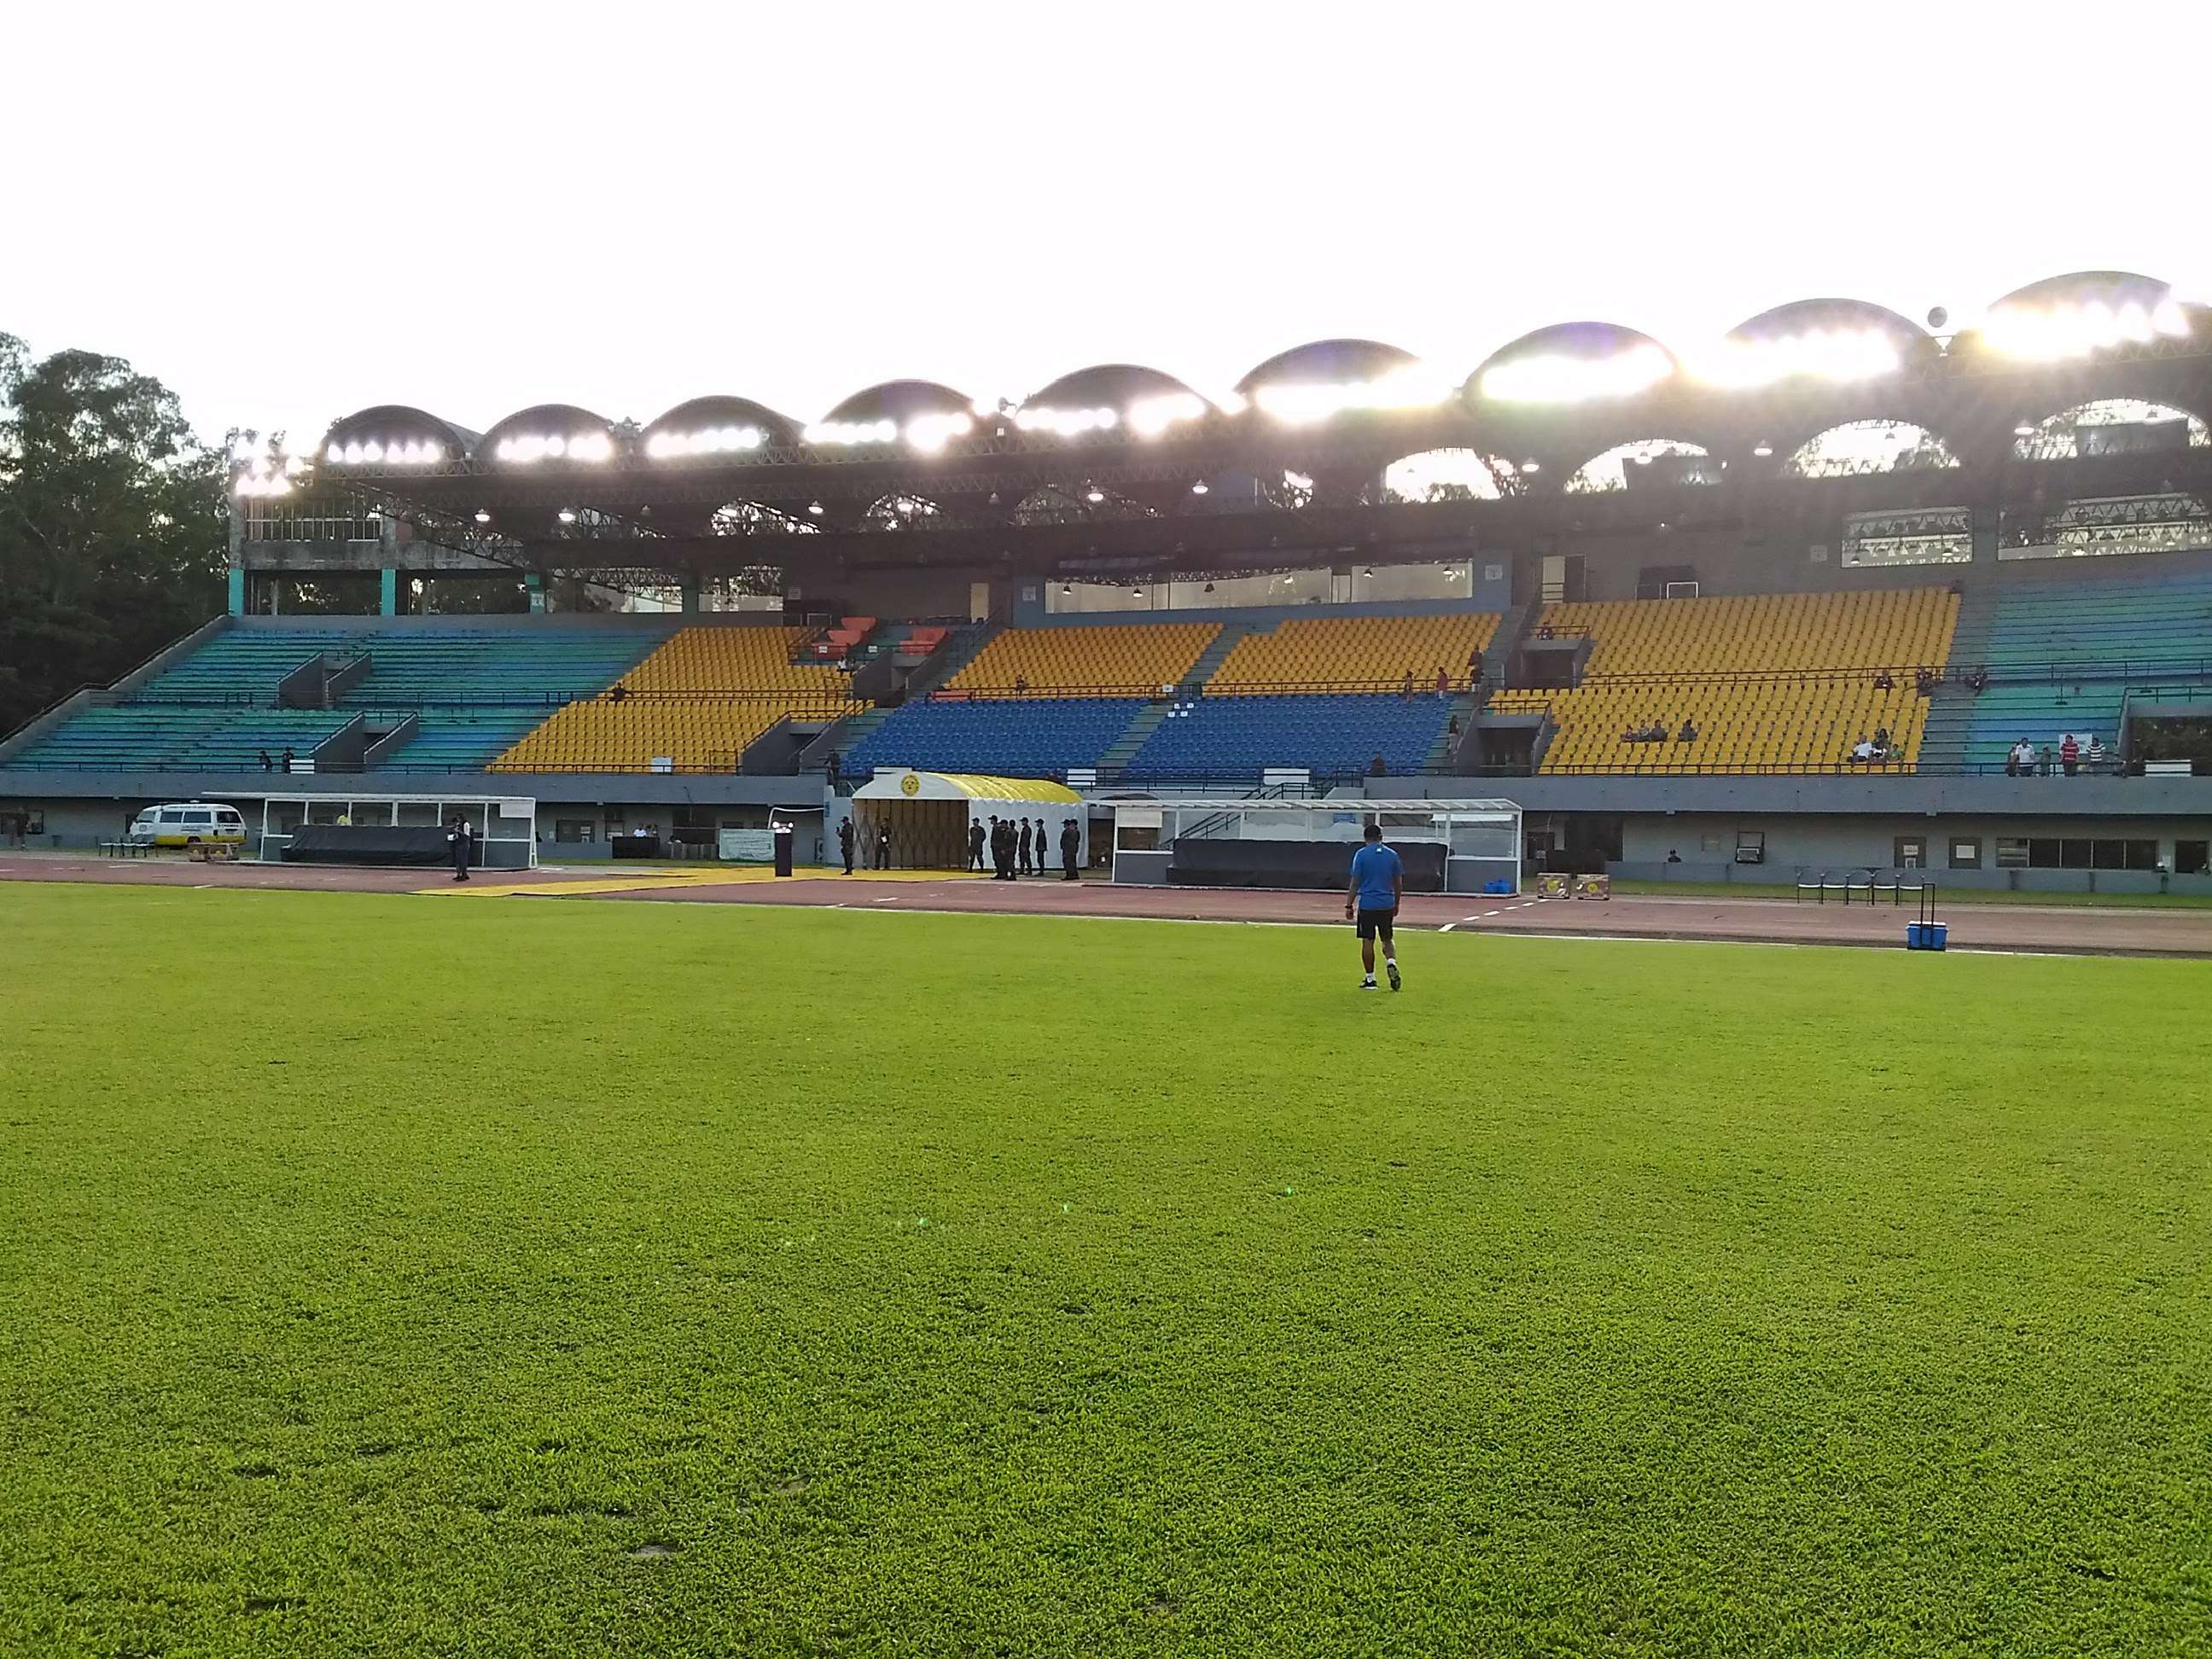 Panaad stadium